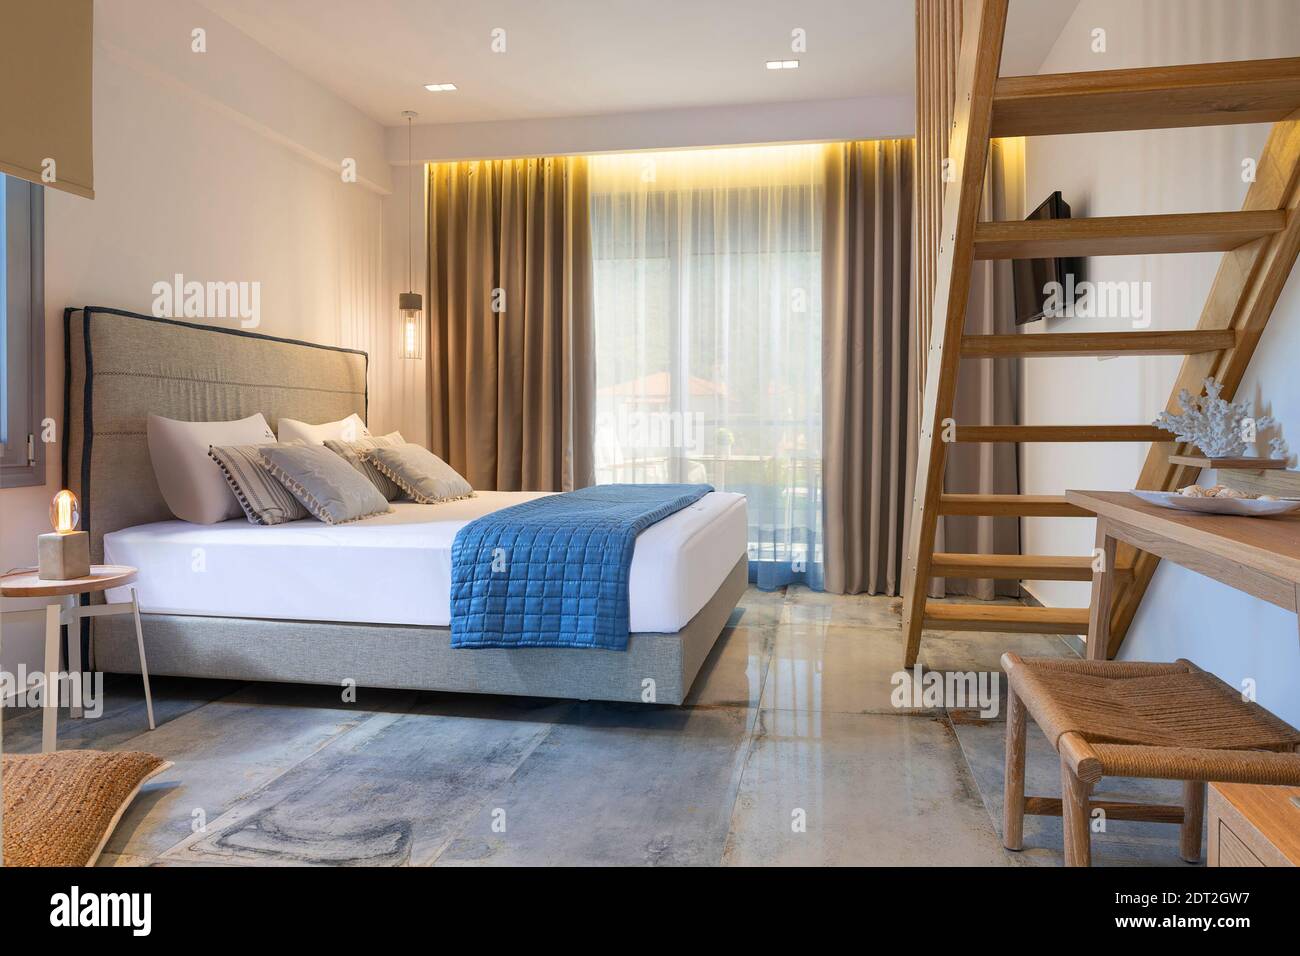 Intérieur moderne de style nautique de l'appartement de l'hôtel, chambre blanche avec échelle en pin, mobilier en bois artisanal, lit double en tissu doux gris Banque D'Images